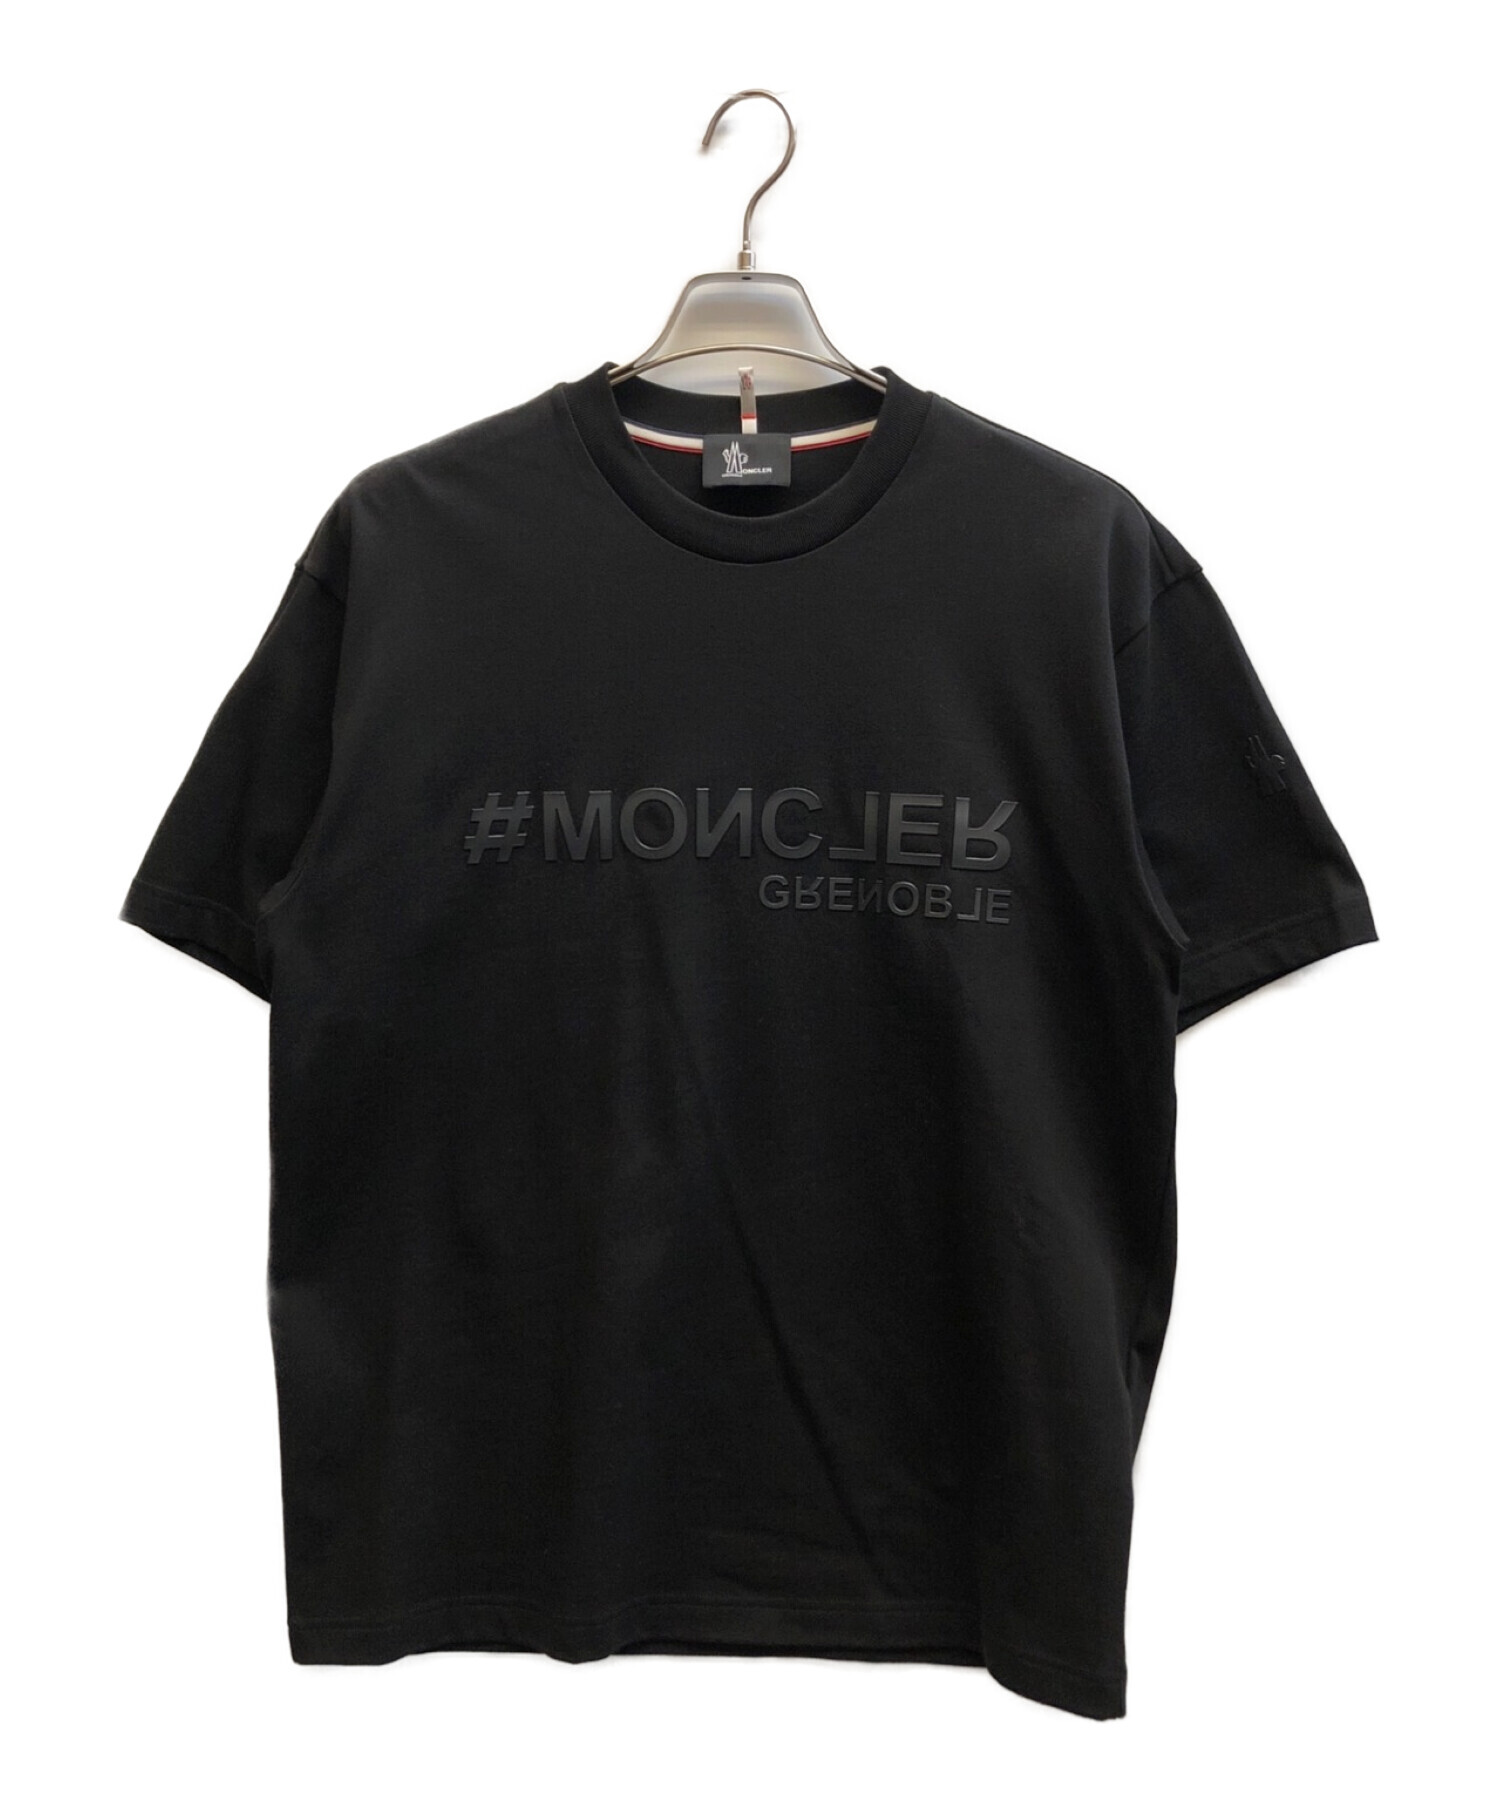 MONCLER (モンクレール) Moncler Grenoble ロゴ Tシャツ ブラック サイズ:M 未使用品